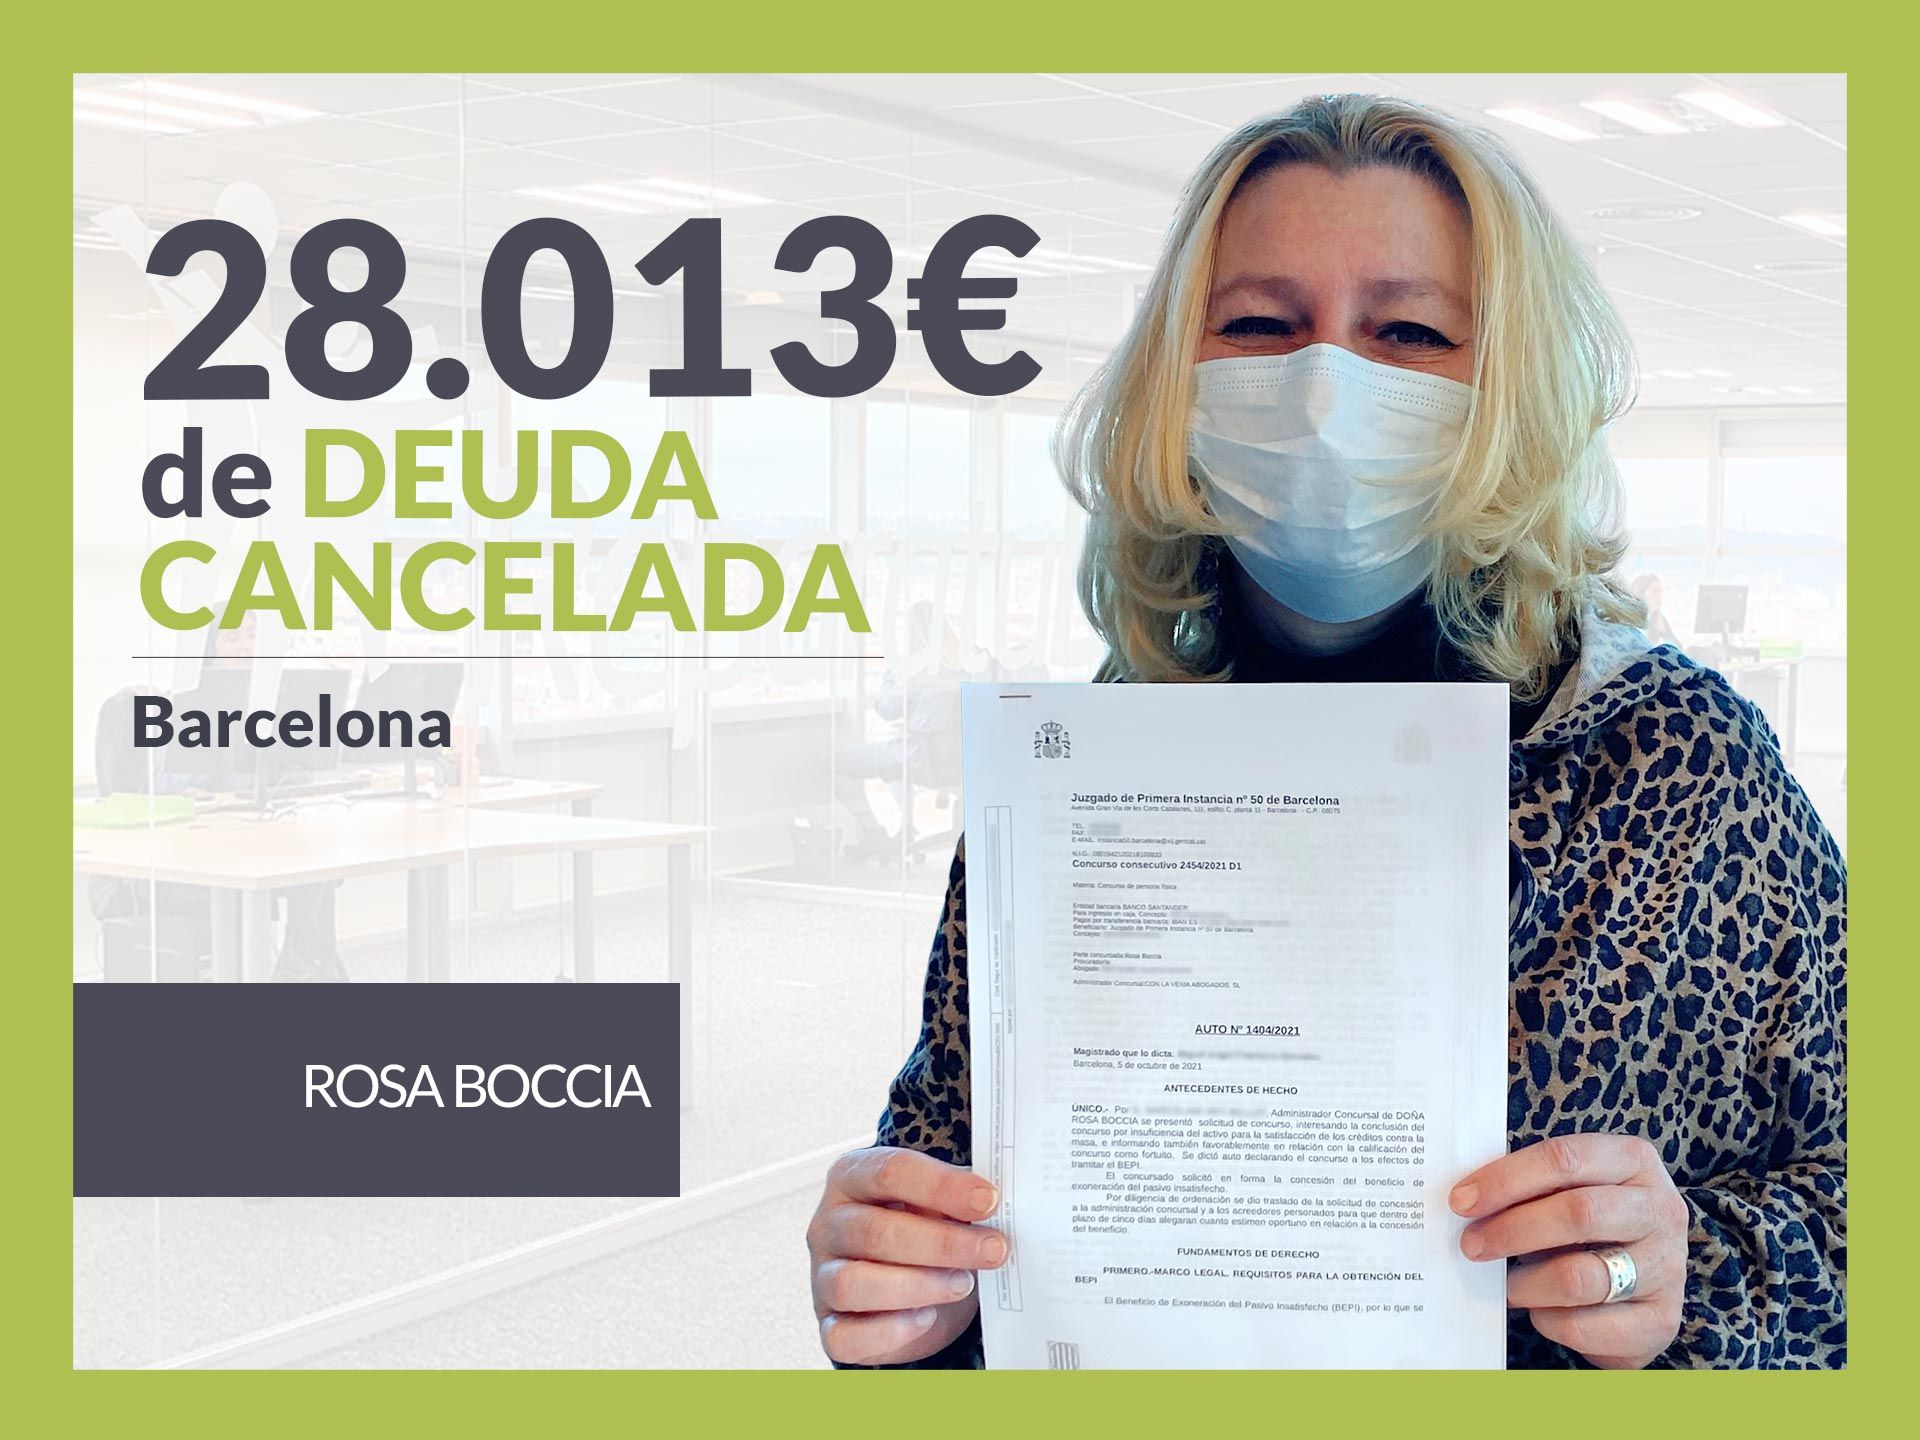 Repara tu Deuda Abogados cancela 28.013 ? en Barcelona (Catalunya) con la Ley de Segunda Oportunidad